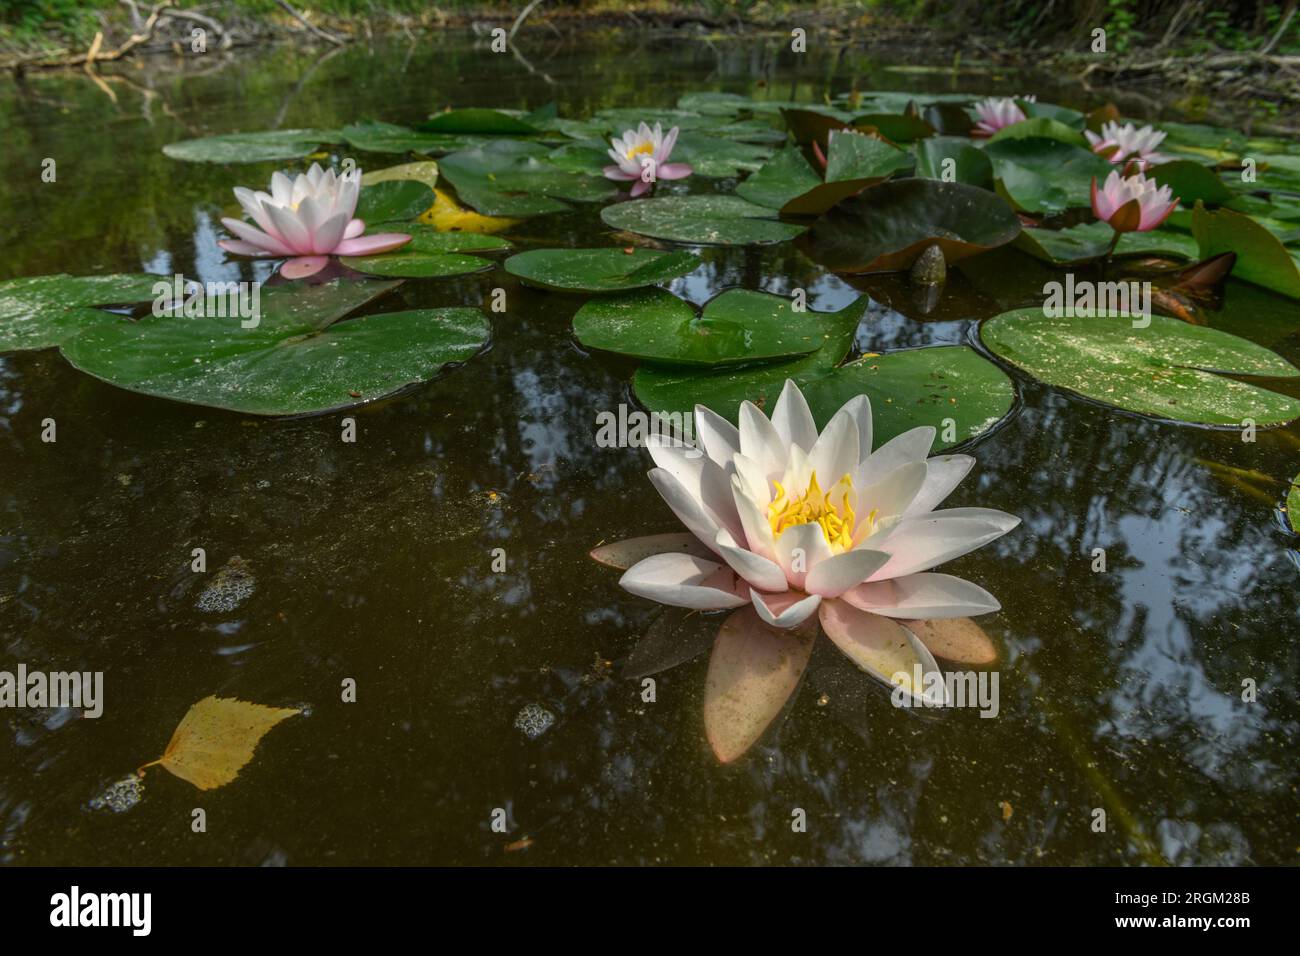 Arrosez les fleurs de nénuphars dans un étang. Bas-Rhin, Collectivite européenne d'Alsace,Grand est, France, Europe. Banque D'Images